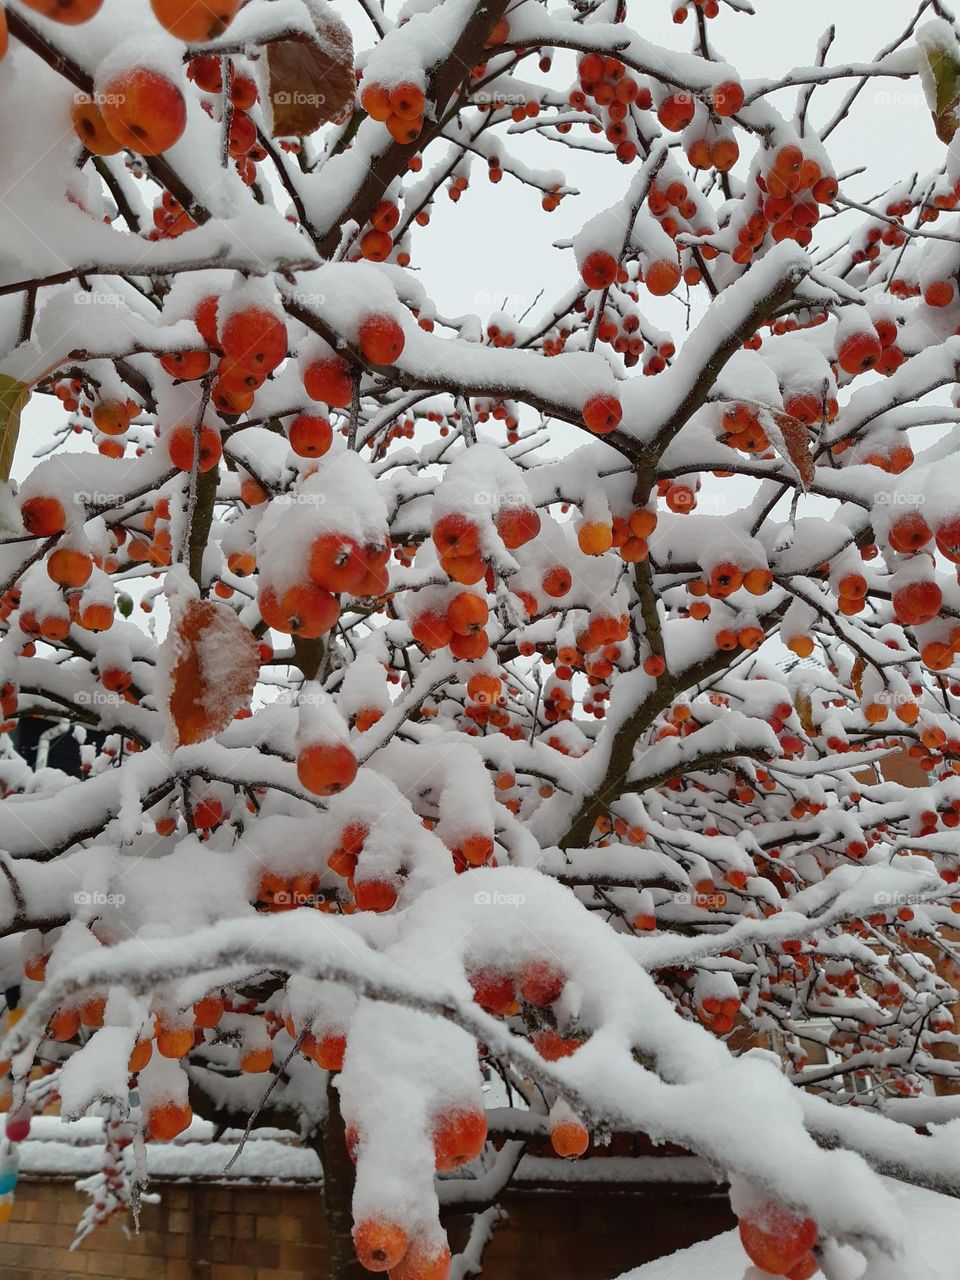 Berries in Snow